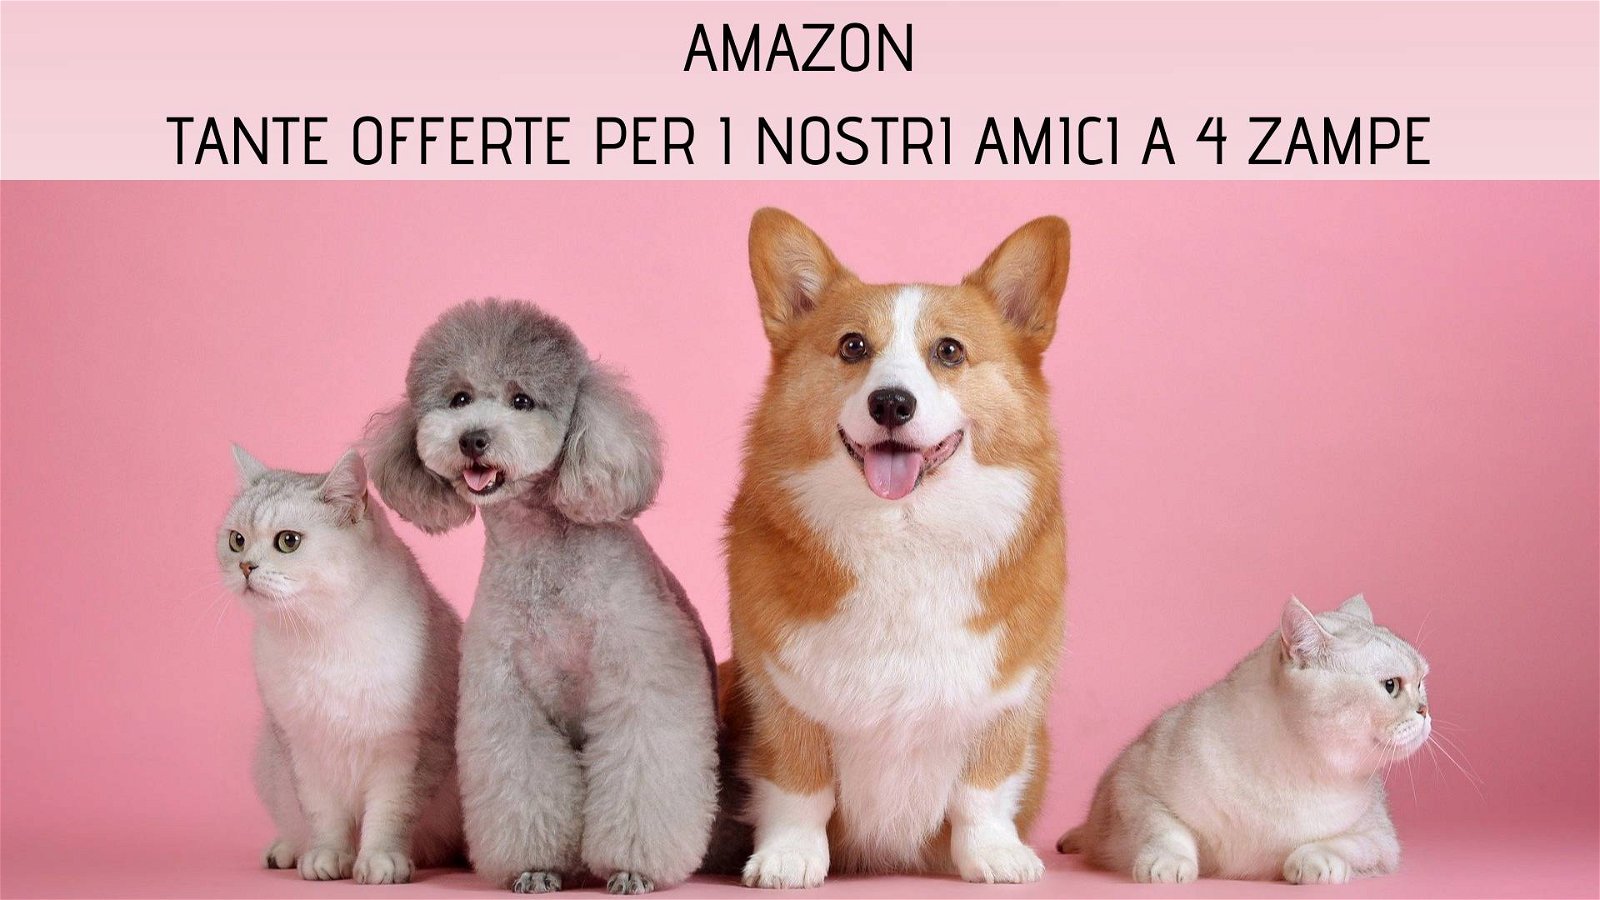 Immagine di Amazon: numerose offerte per i nostri amici animali